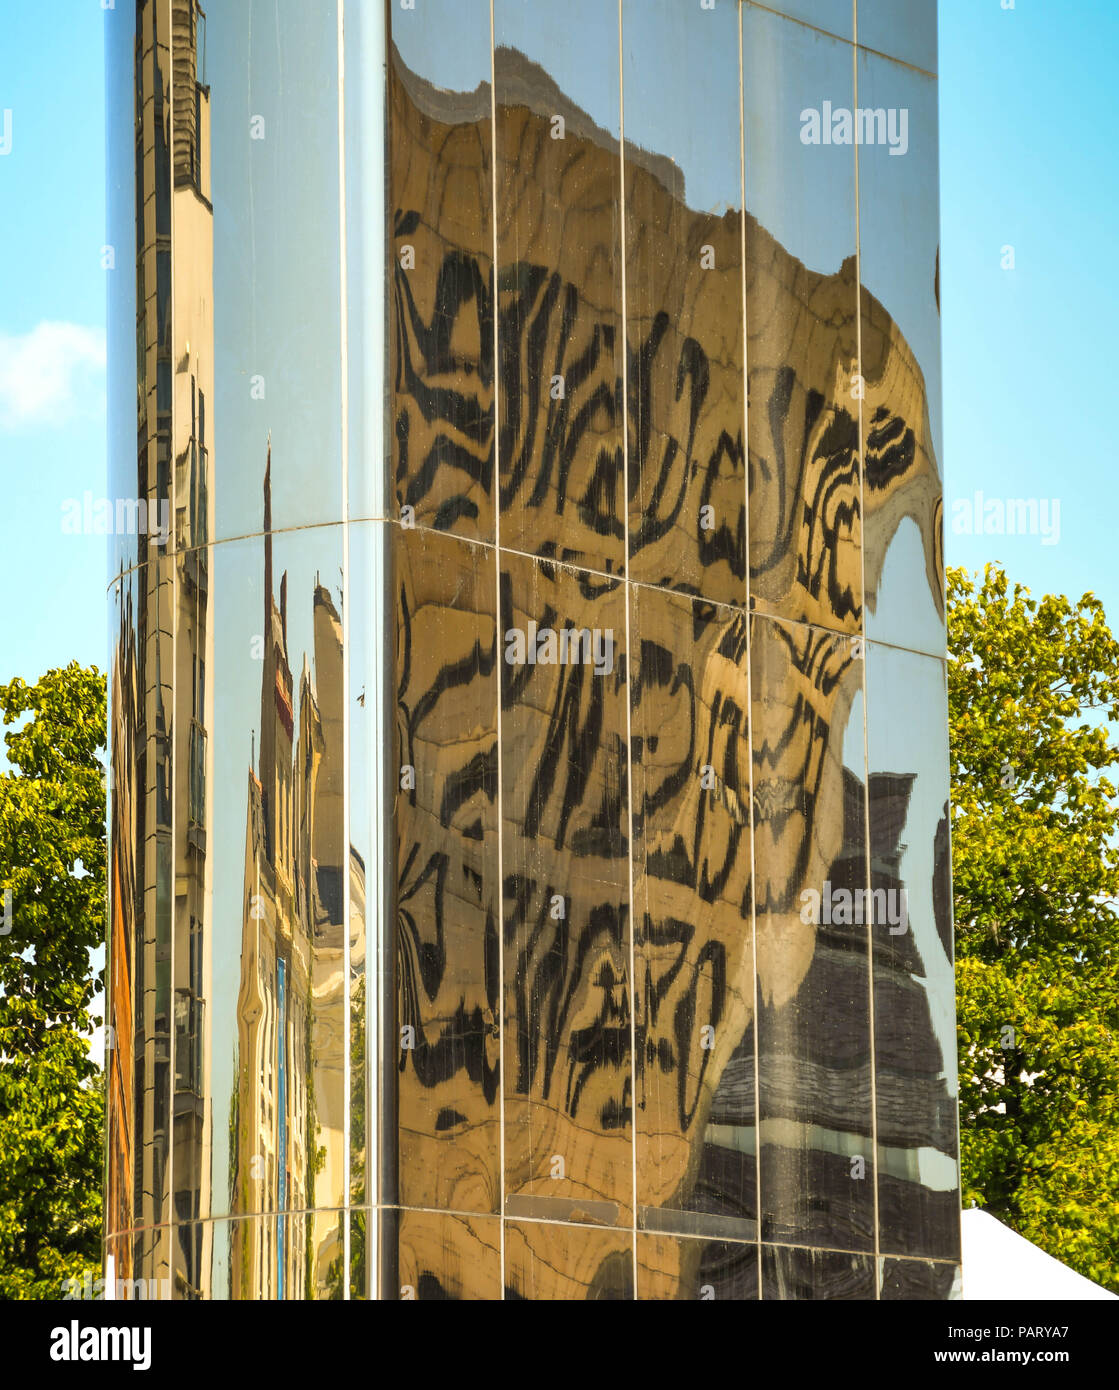 Reflet de la Wales Millennium Centre dans un brillant tour métallique qui est un exemple d'art public dans le bassin ovale à Cardiff Bay Banque D'Images